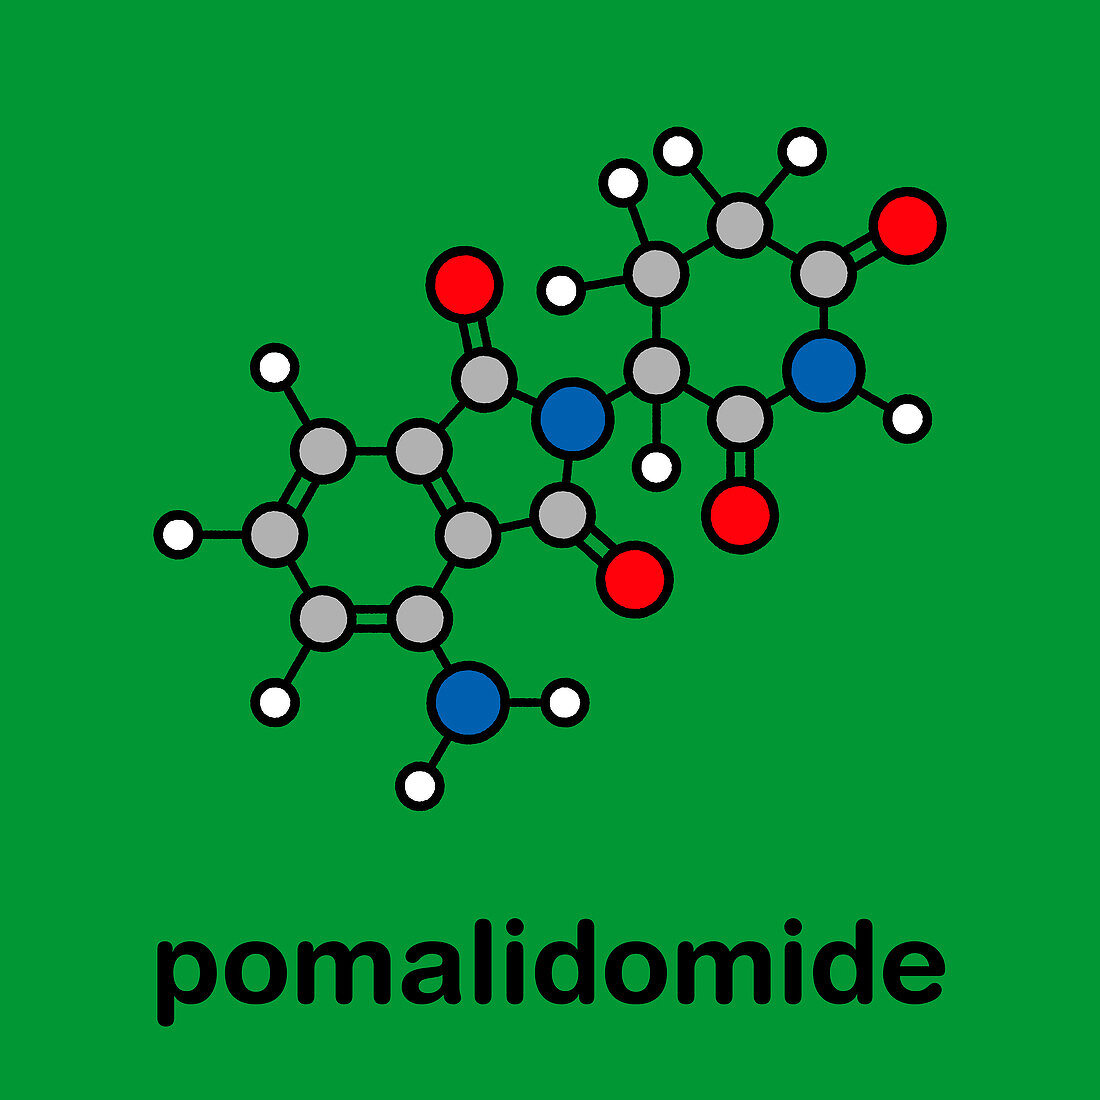 Pomalidomide multiple myeloma drug, molecular model